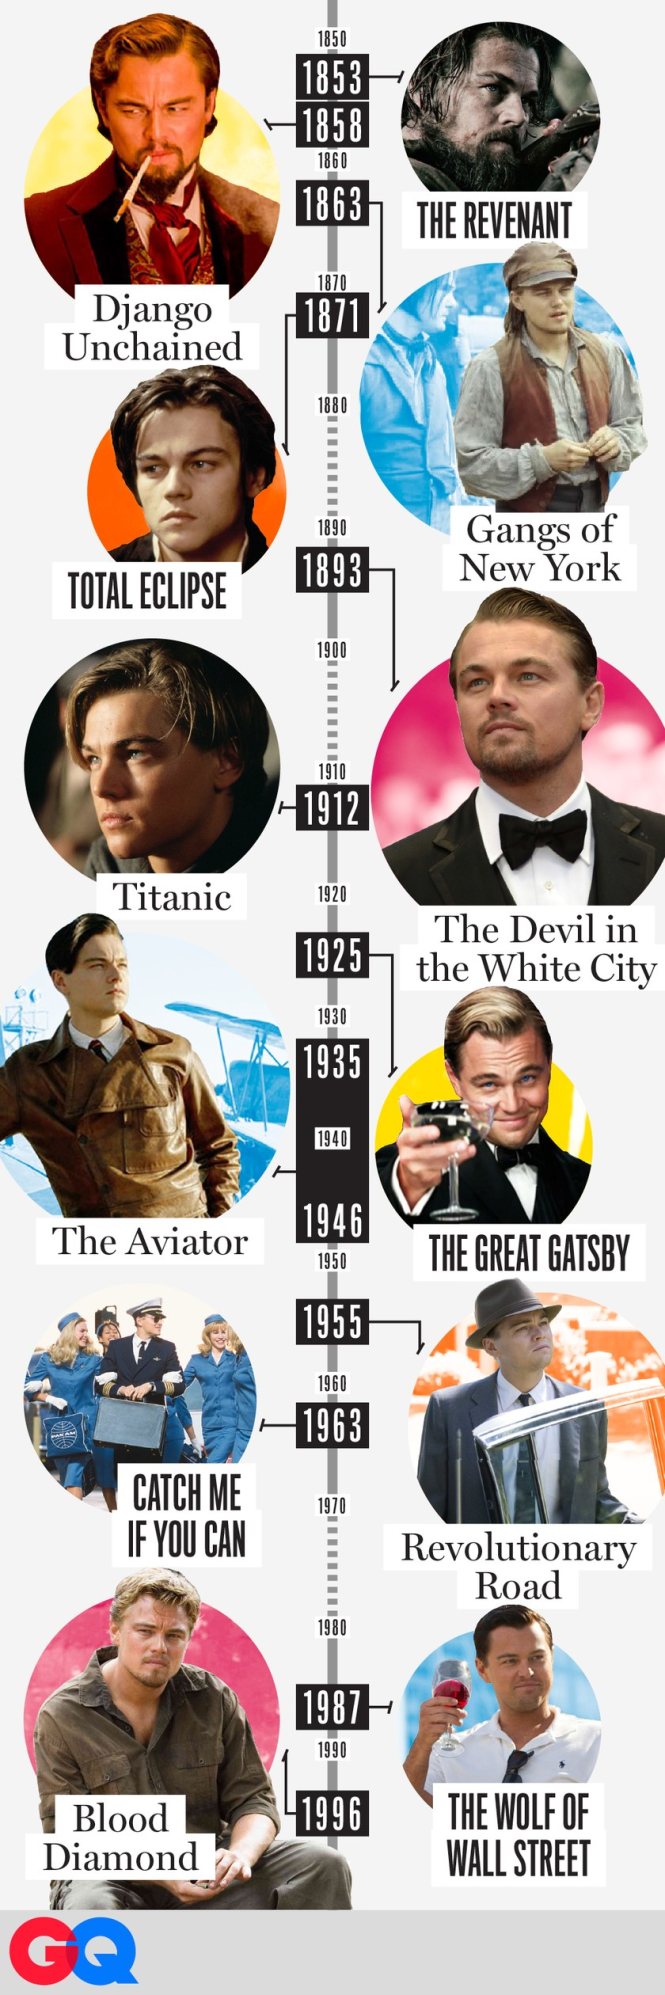 Nhìn lại những nhân vật xuyên thời gian trong sự nghiệp Leonardo DiCaprio - Ảnh: GQ